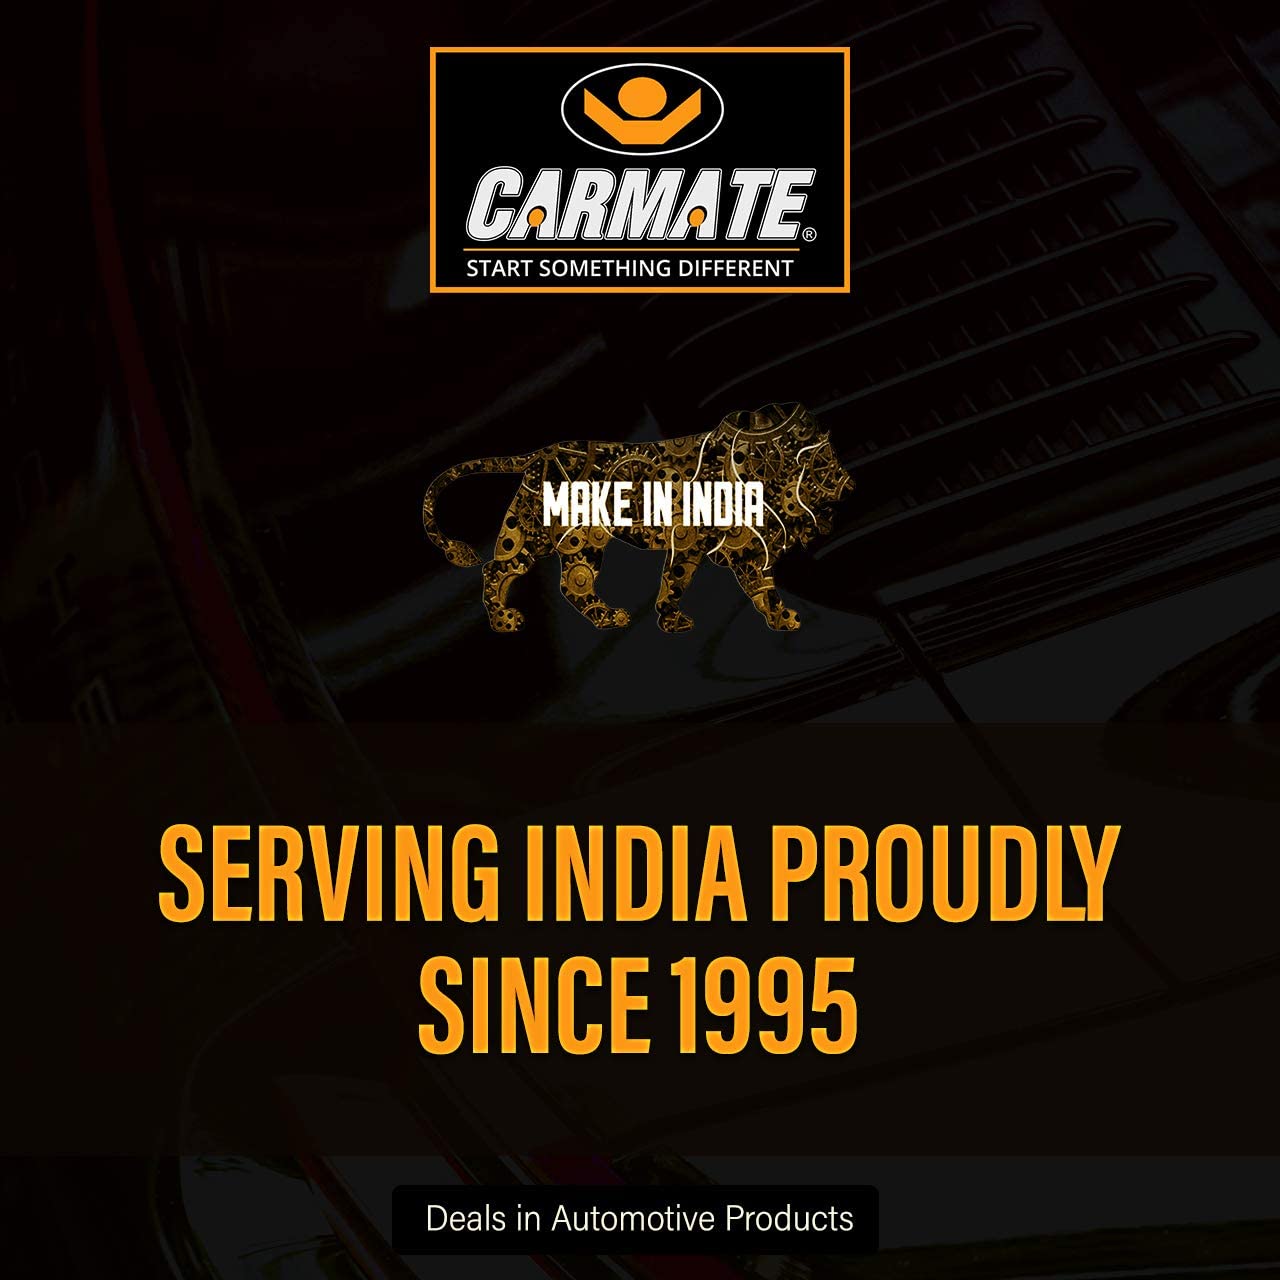 Carmate Passion Car Body Cover (Black and Orange) for Porsche - Cayenne - CARMATE®